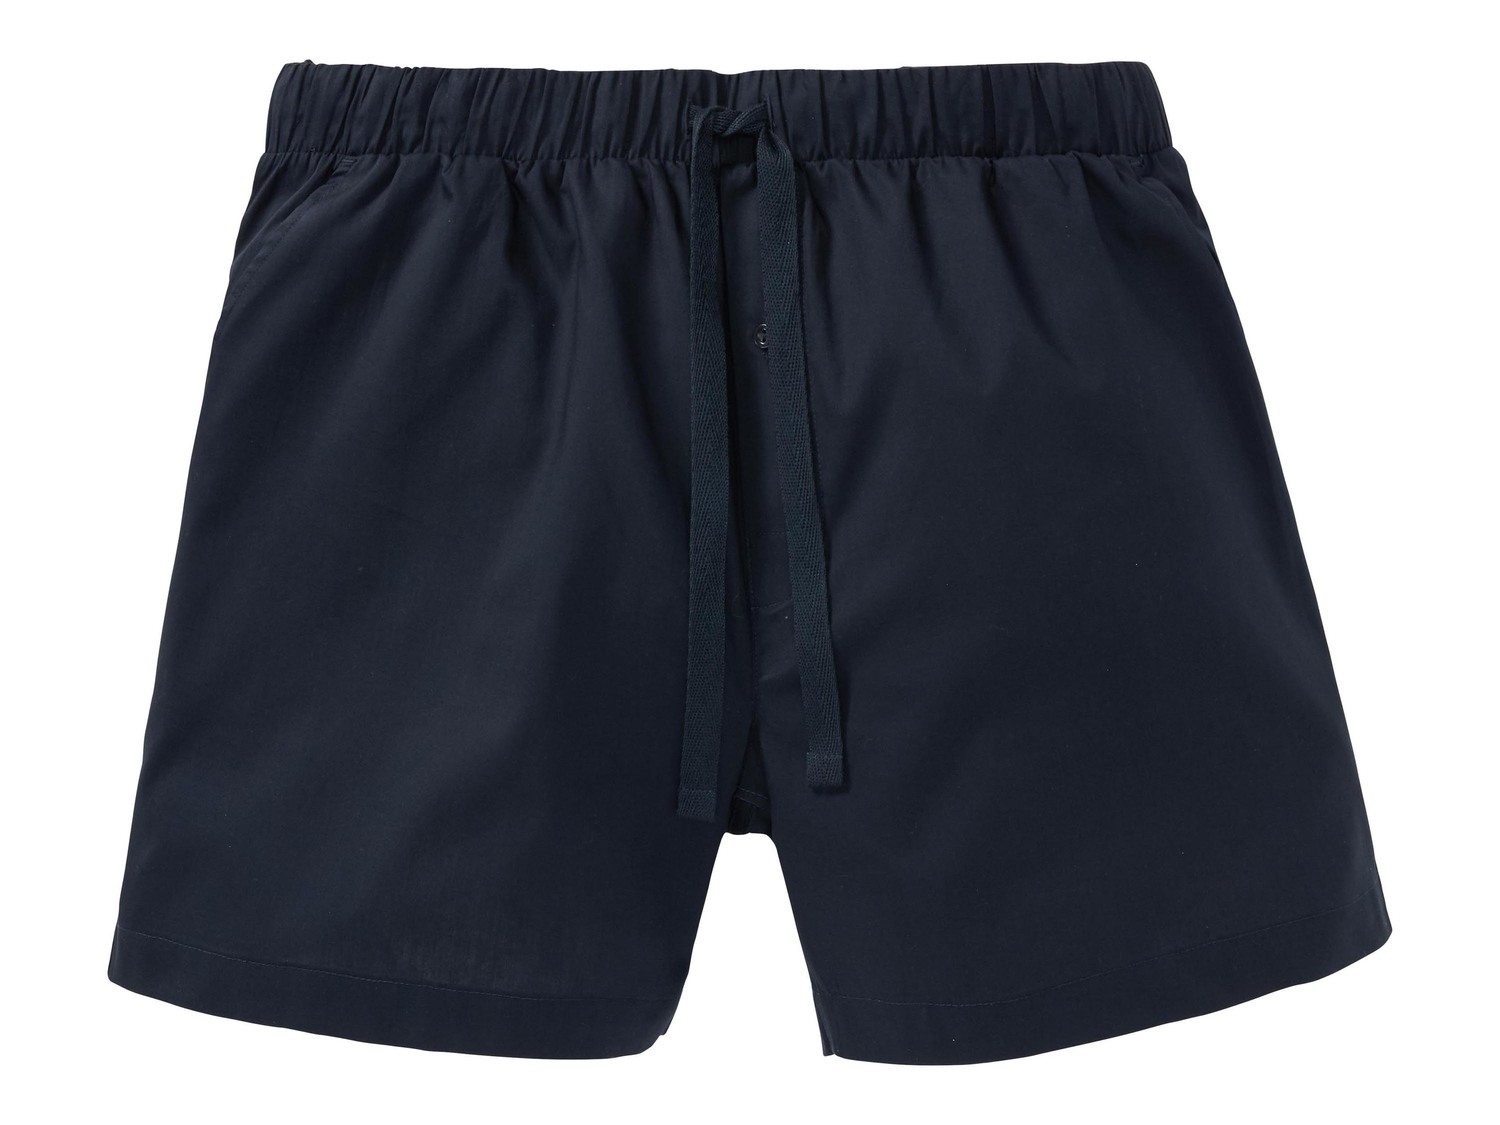 Shorts pigiama da uomo Livergy, prezzo 4.99 &#8364;  
Misure: S-XL
- Oeko tex NEW